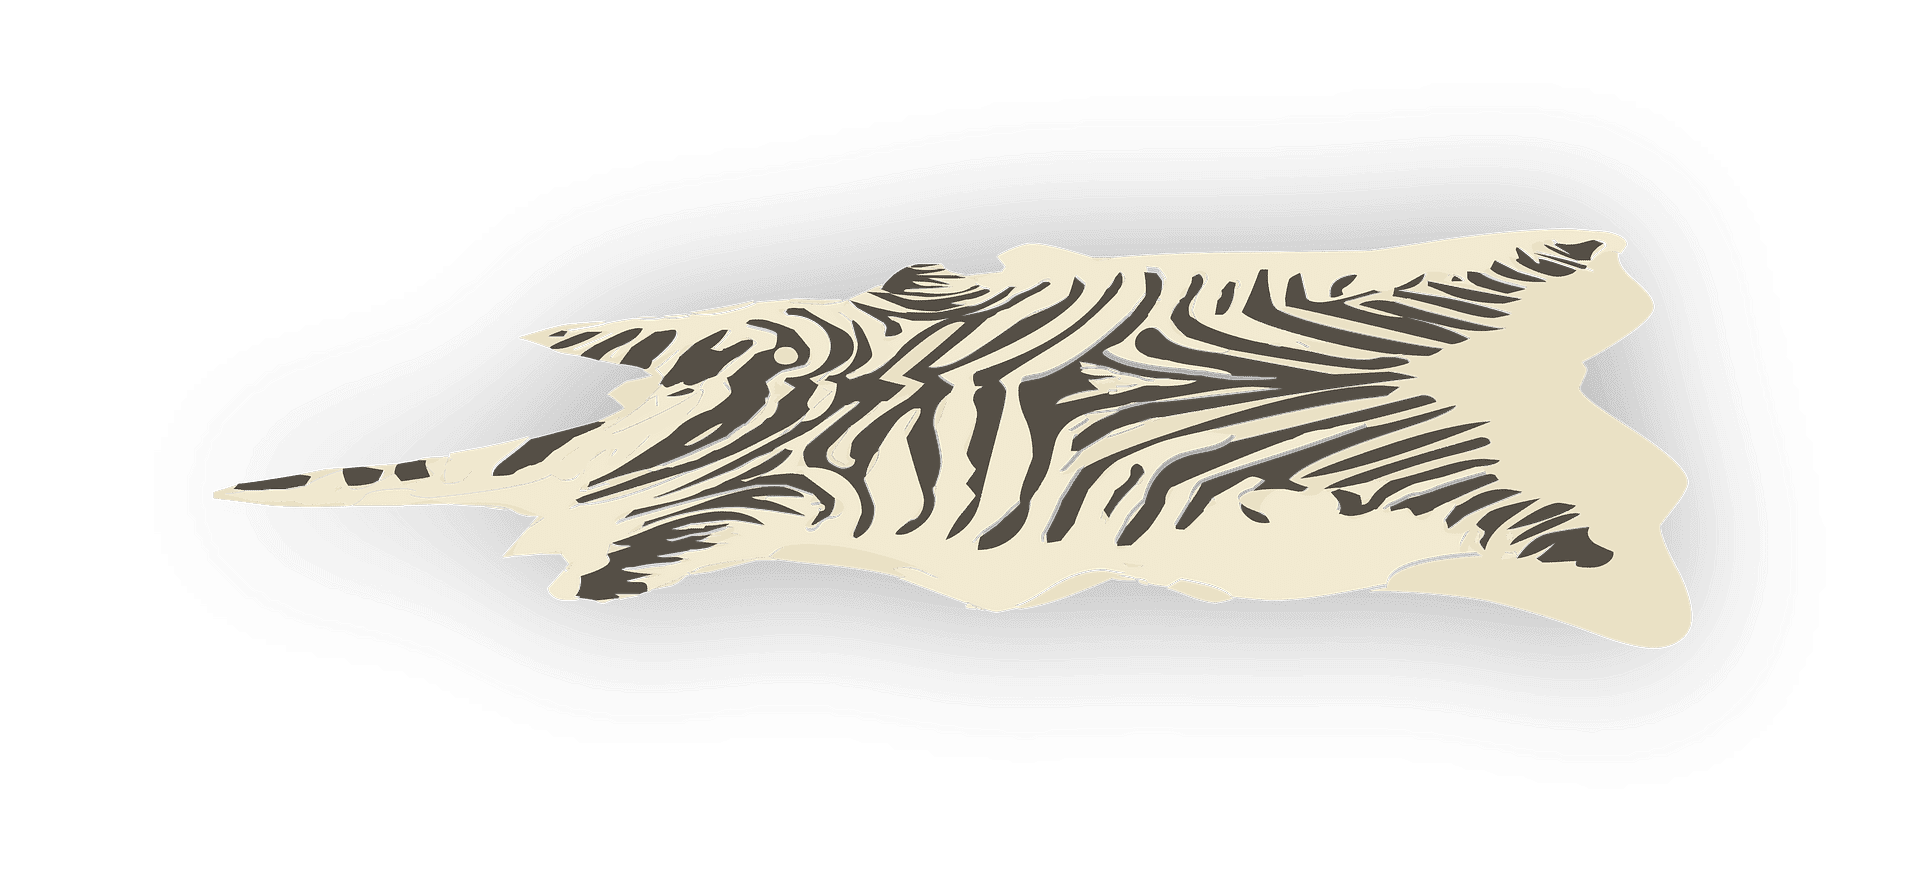 Zebra Rug clipart transparent